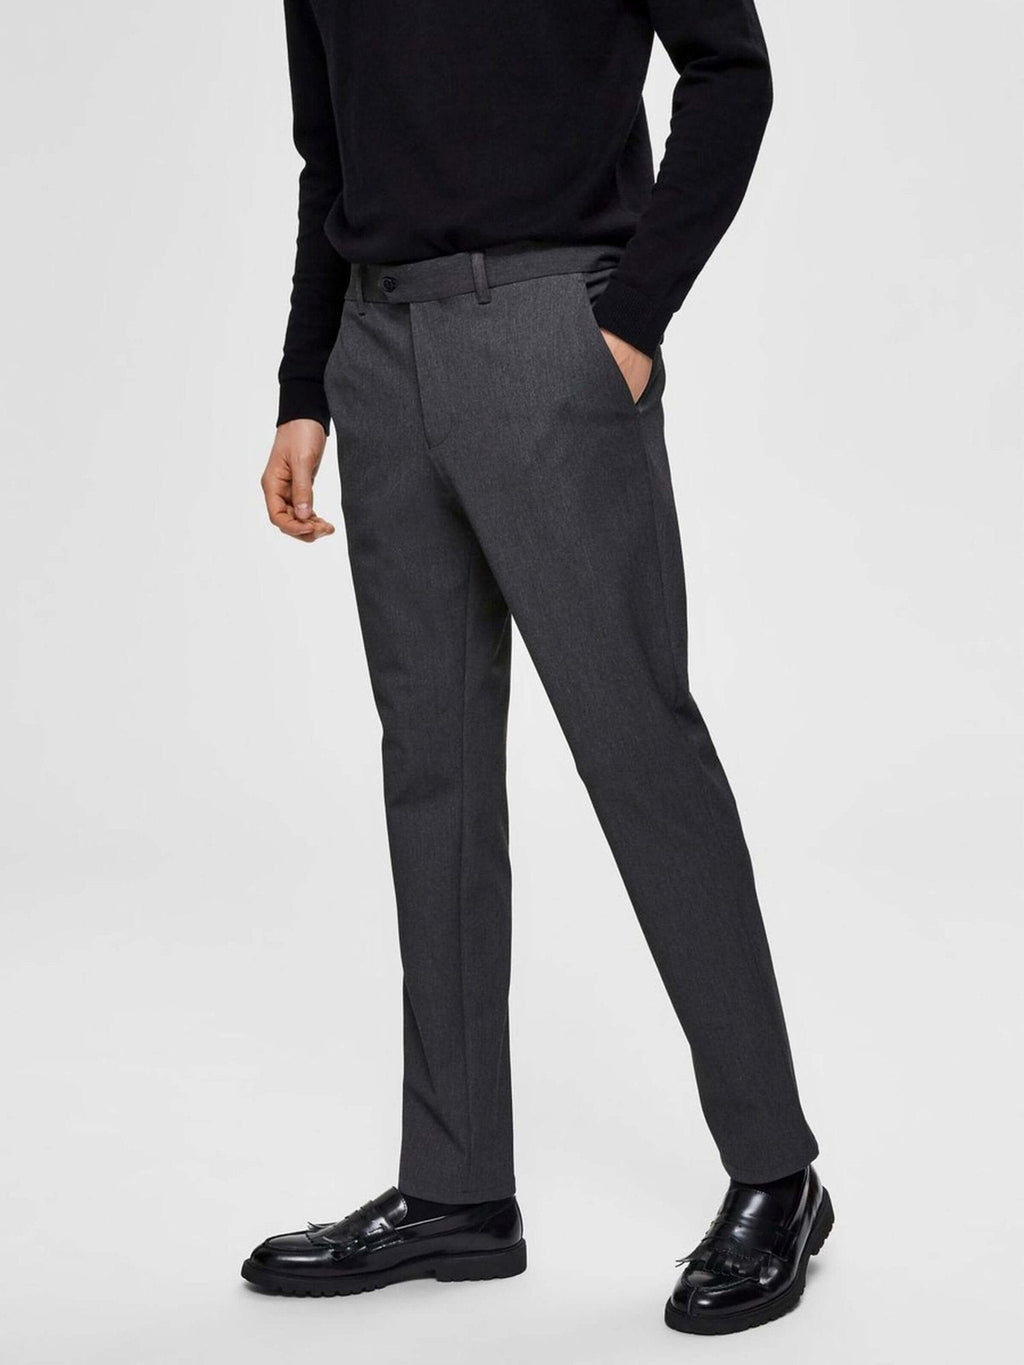 Prestazione Premium Pantaloni - grigio scuro